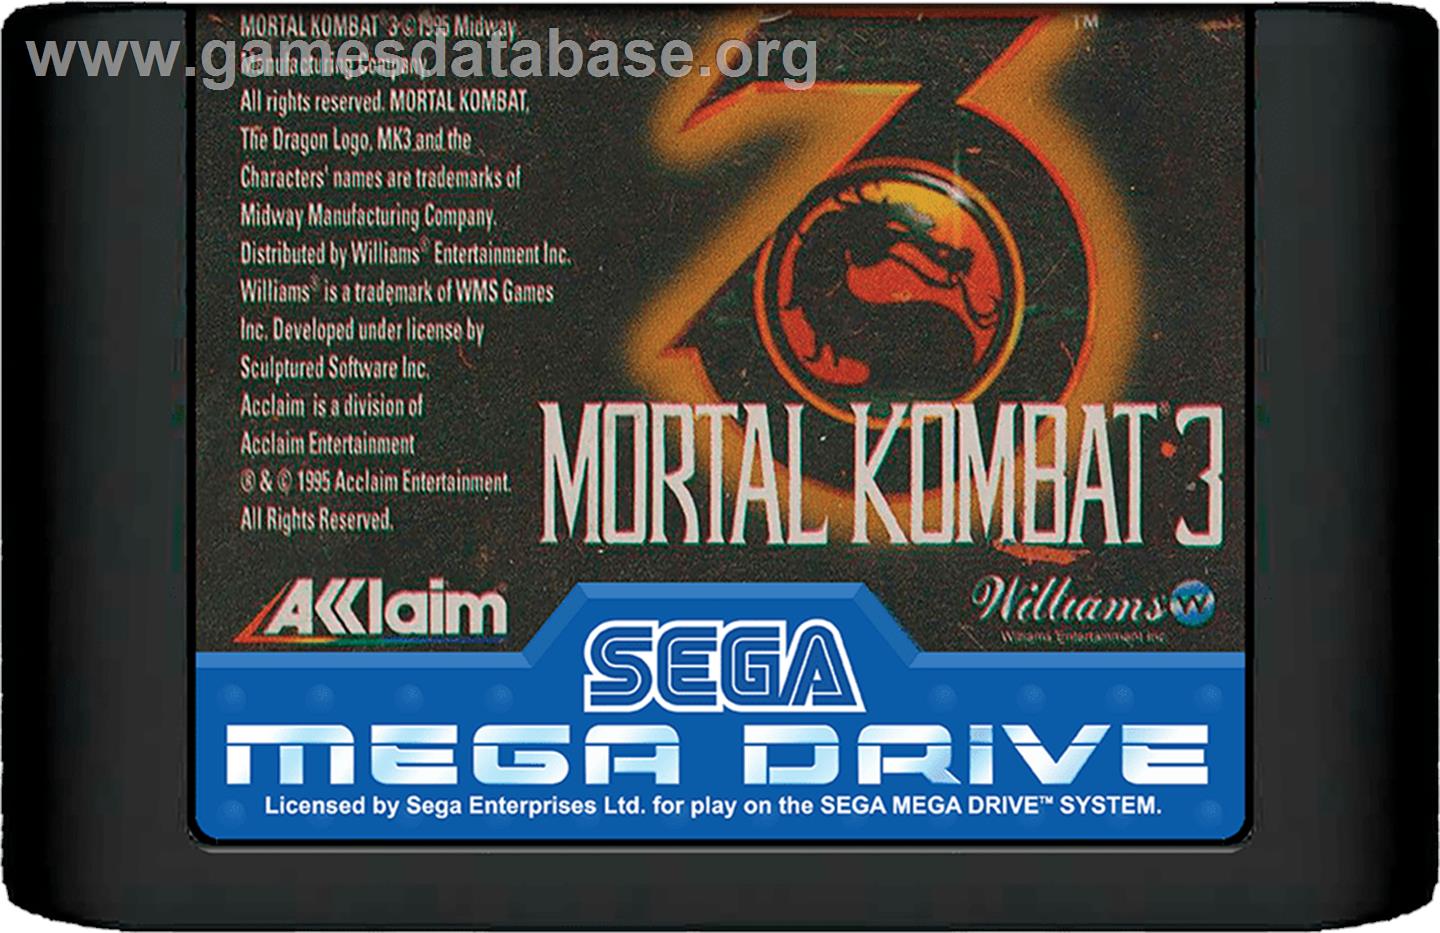 Mortal Kombat 3 - Sega Genesis - Artwork - Cartridge